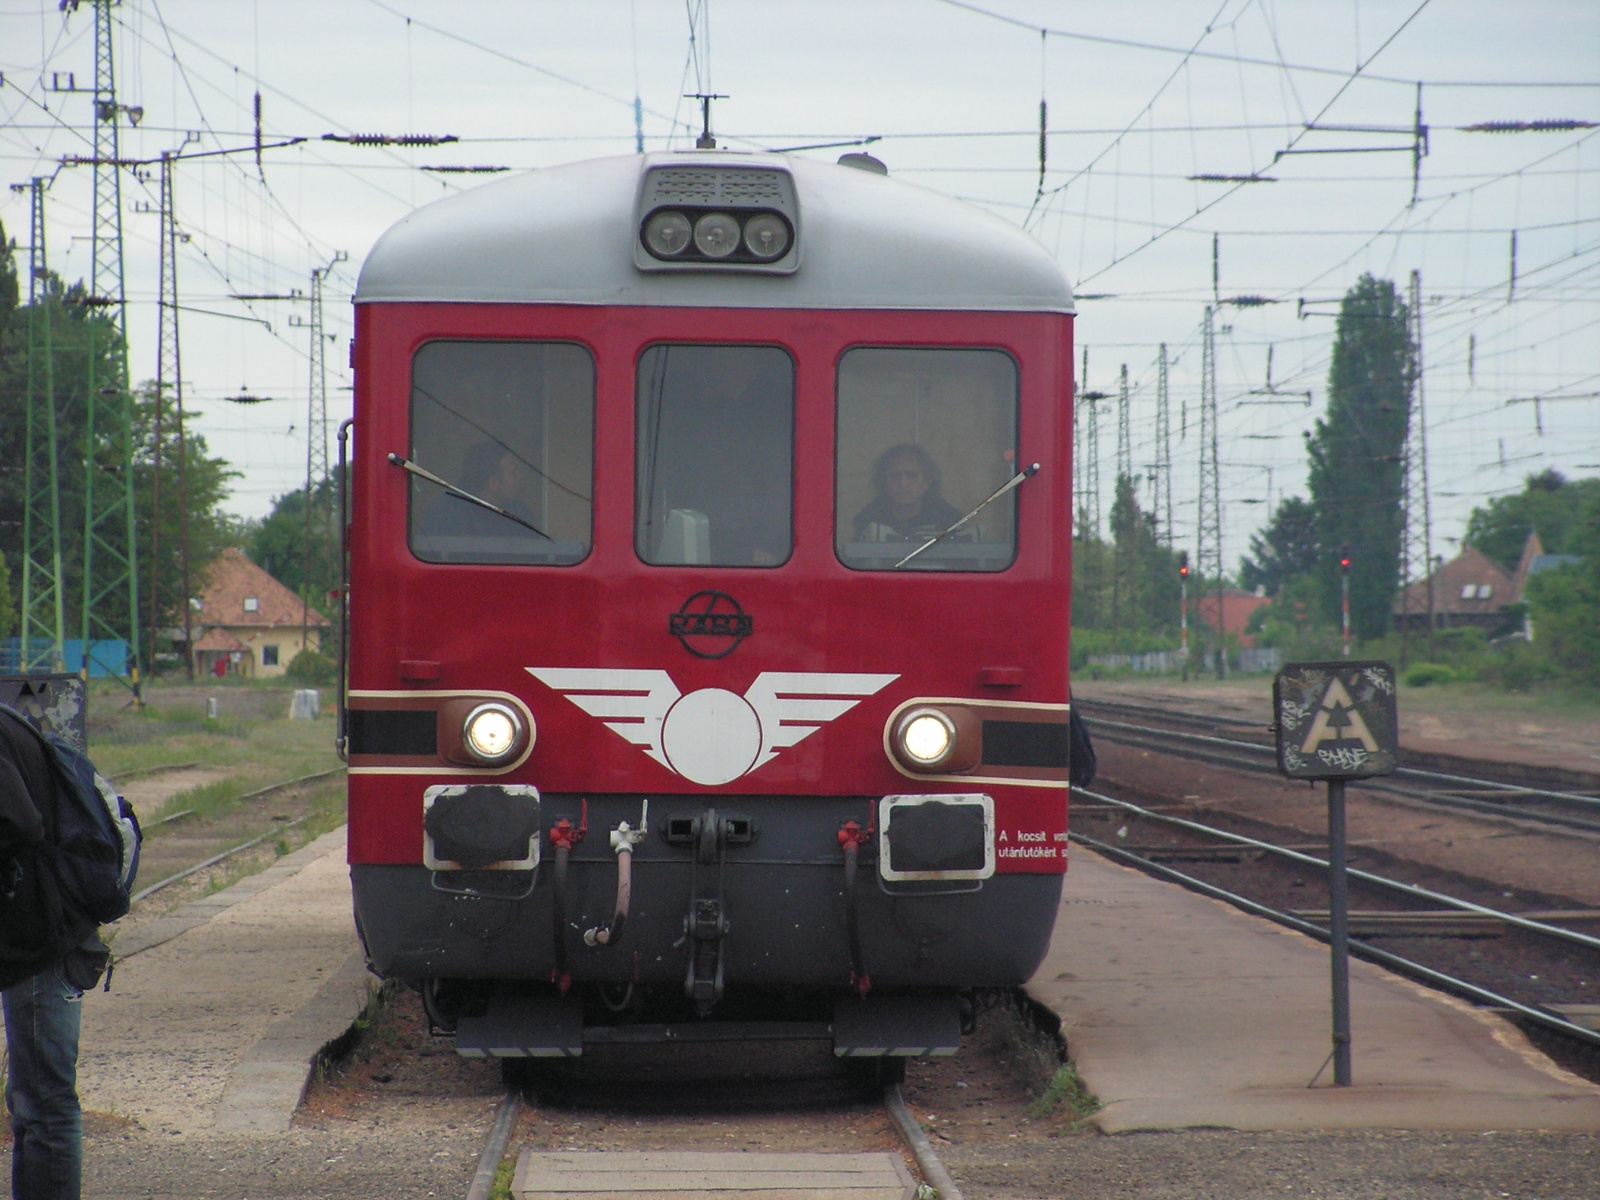 H-MÁV Ba mot 701 (Rába-Balaton motorvonat), SzG3